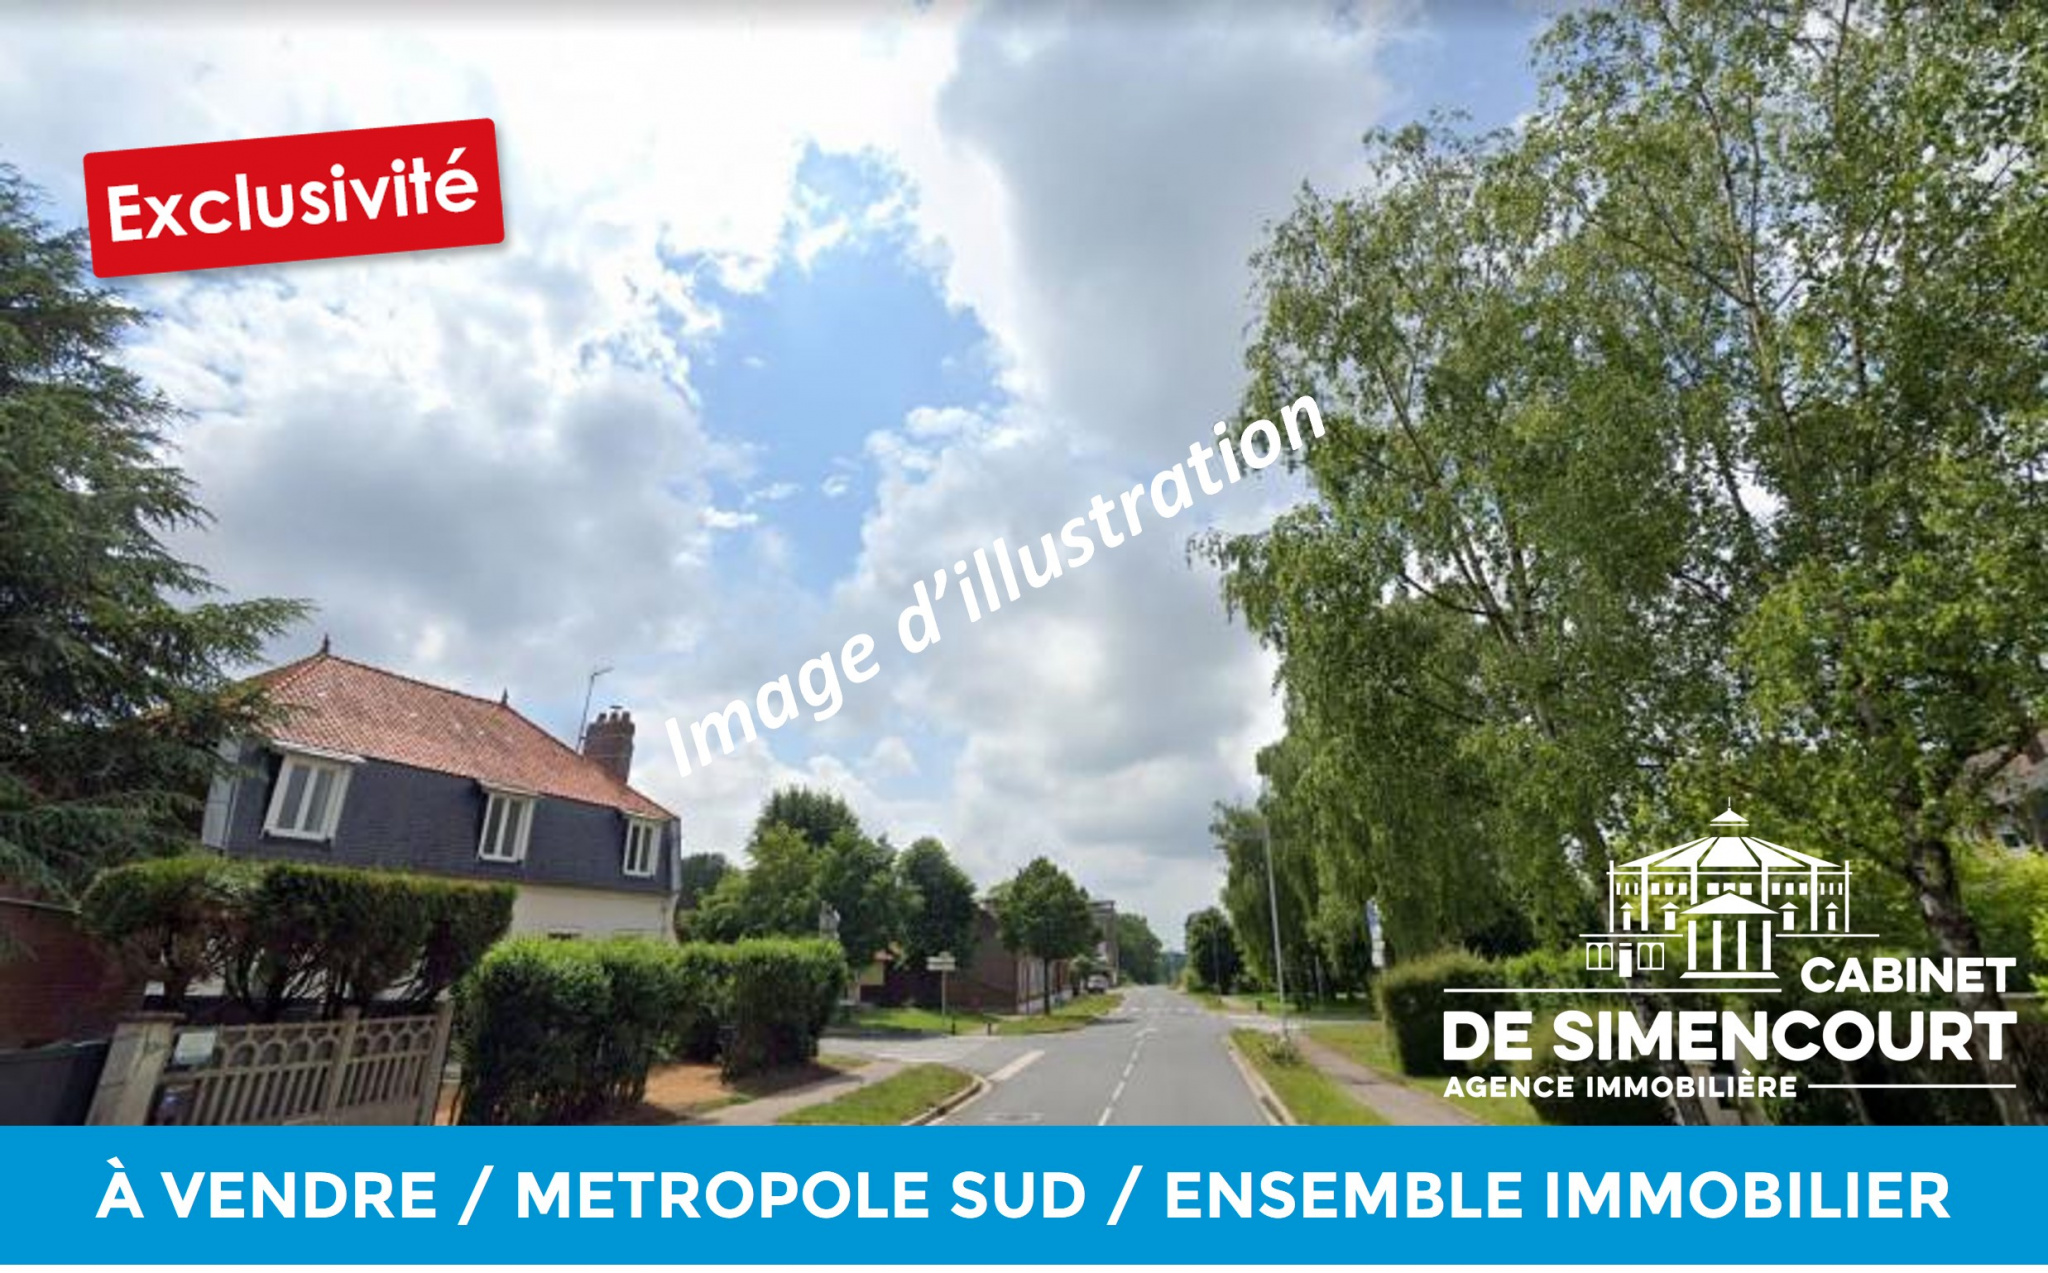 Immo80 – L'immobilier à Amiens et dans la Somme-EXCLUSIVITE – METROPOLE SUD – ENSEMBLE IMMOBILIER